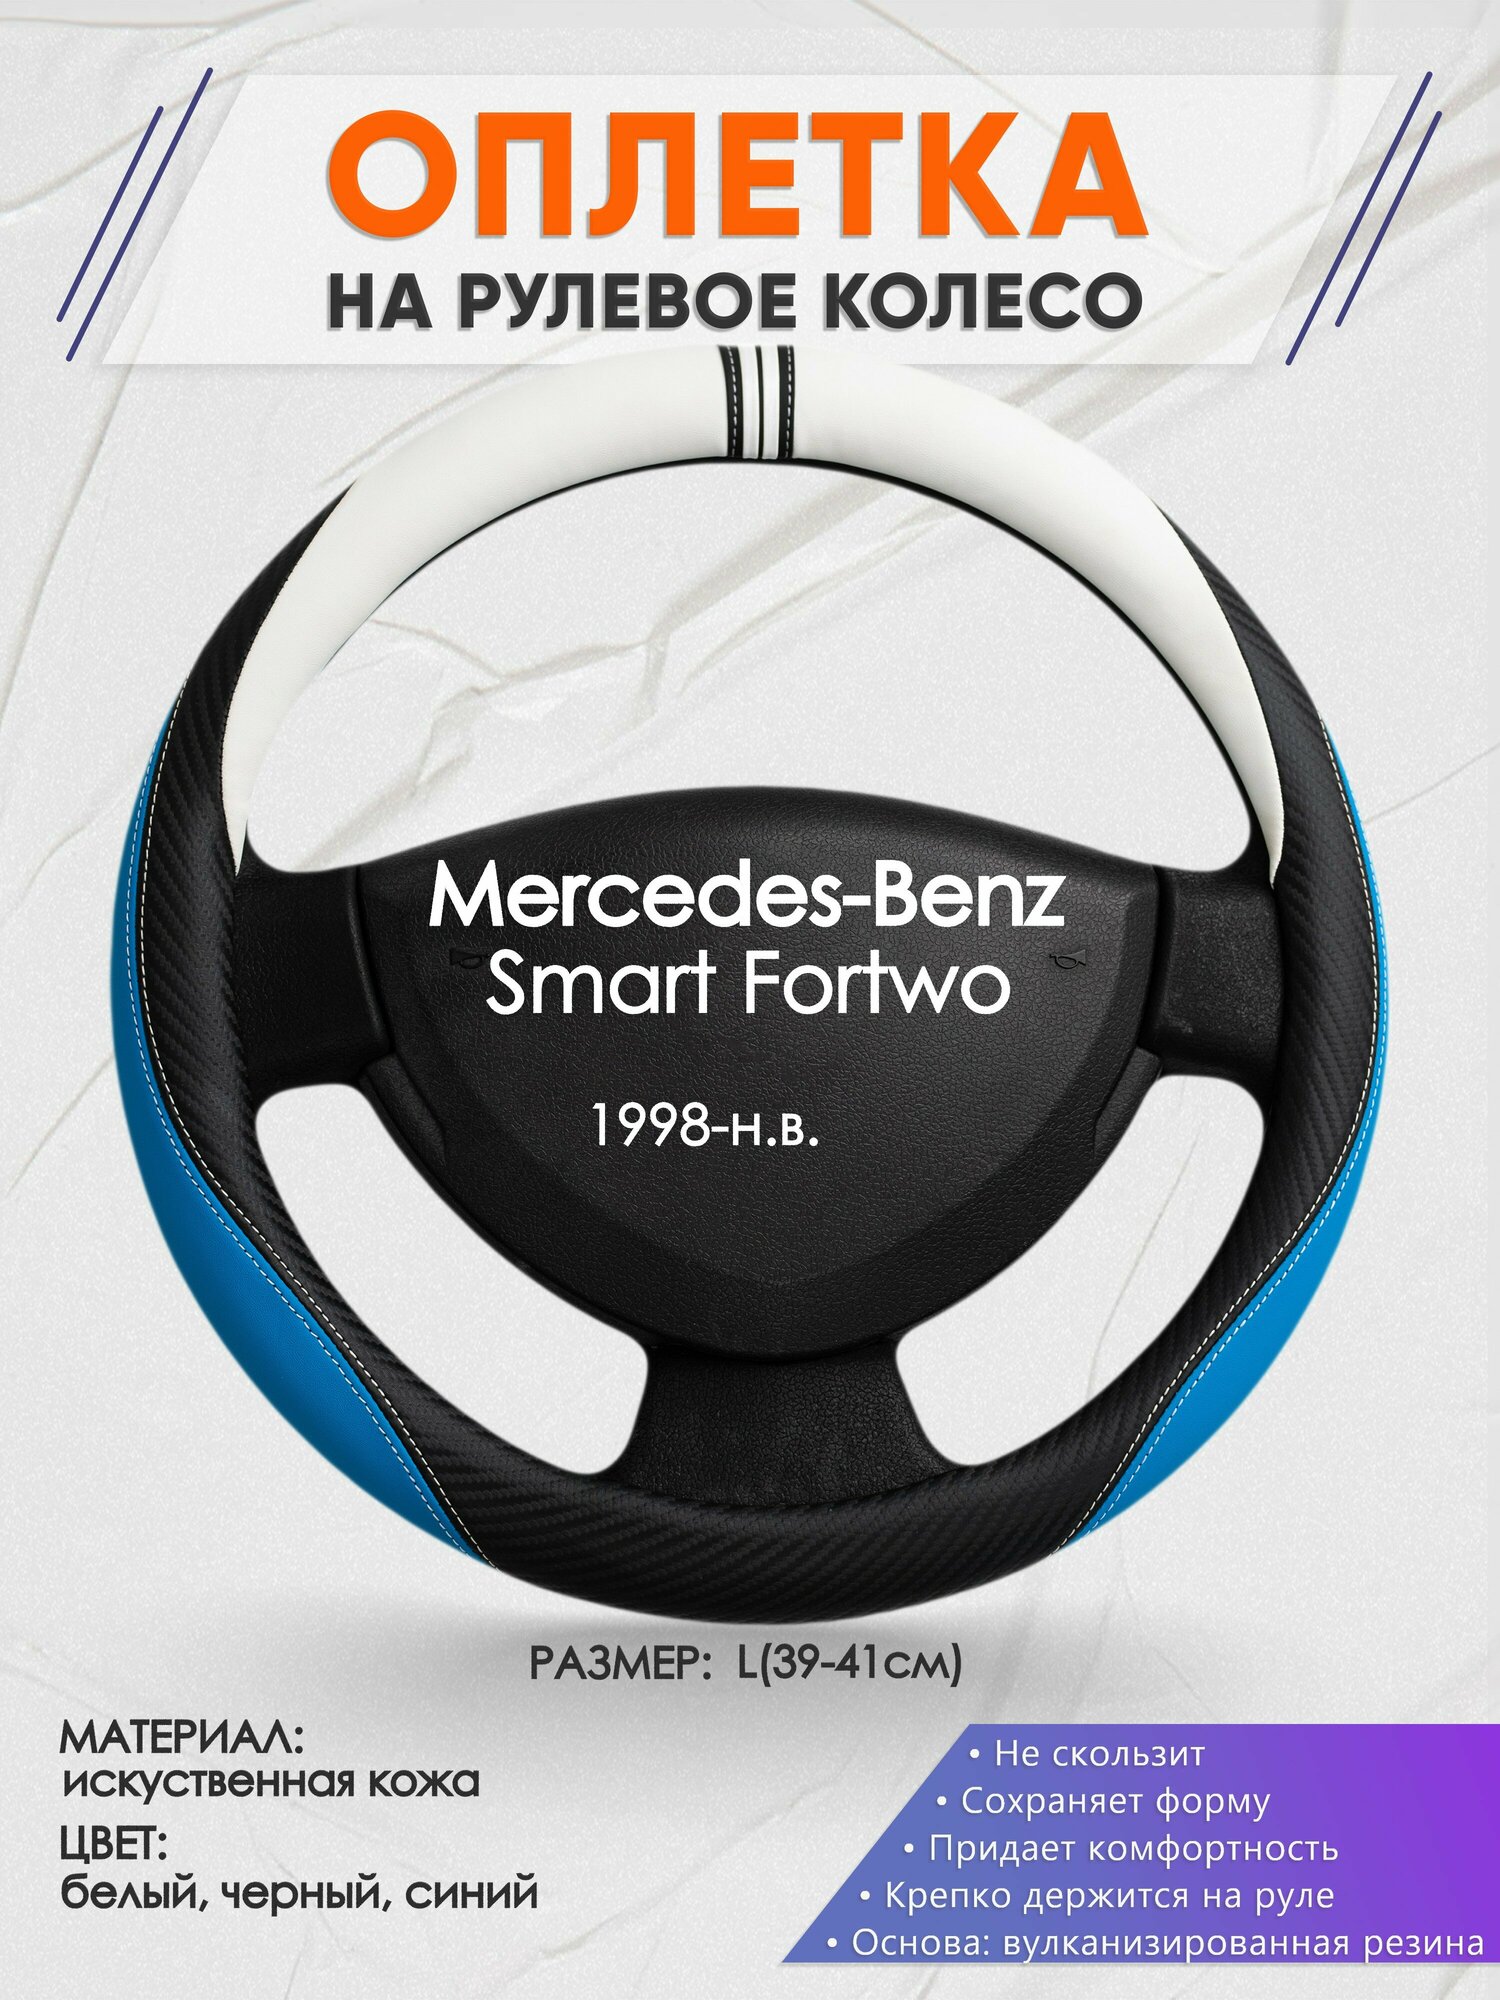 Оплетка на руль для Mercedes-Benz Smart Fortwo(Мерседес Бенц Смарт Форту) 1998-н. в, L(39-41см), Искусственная кожа 03